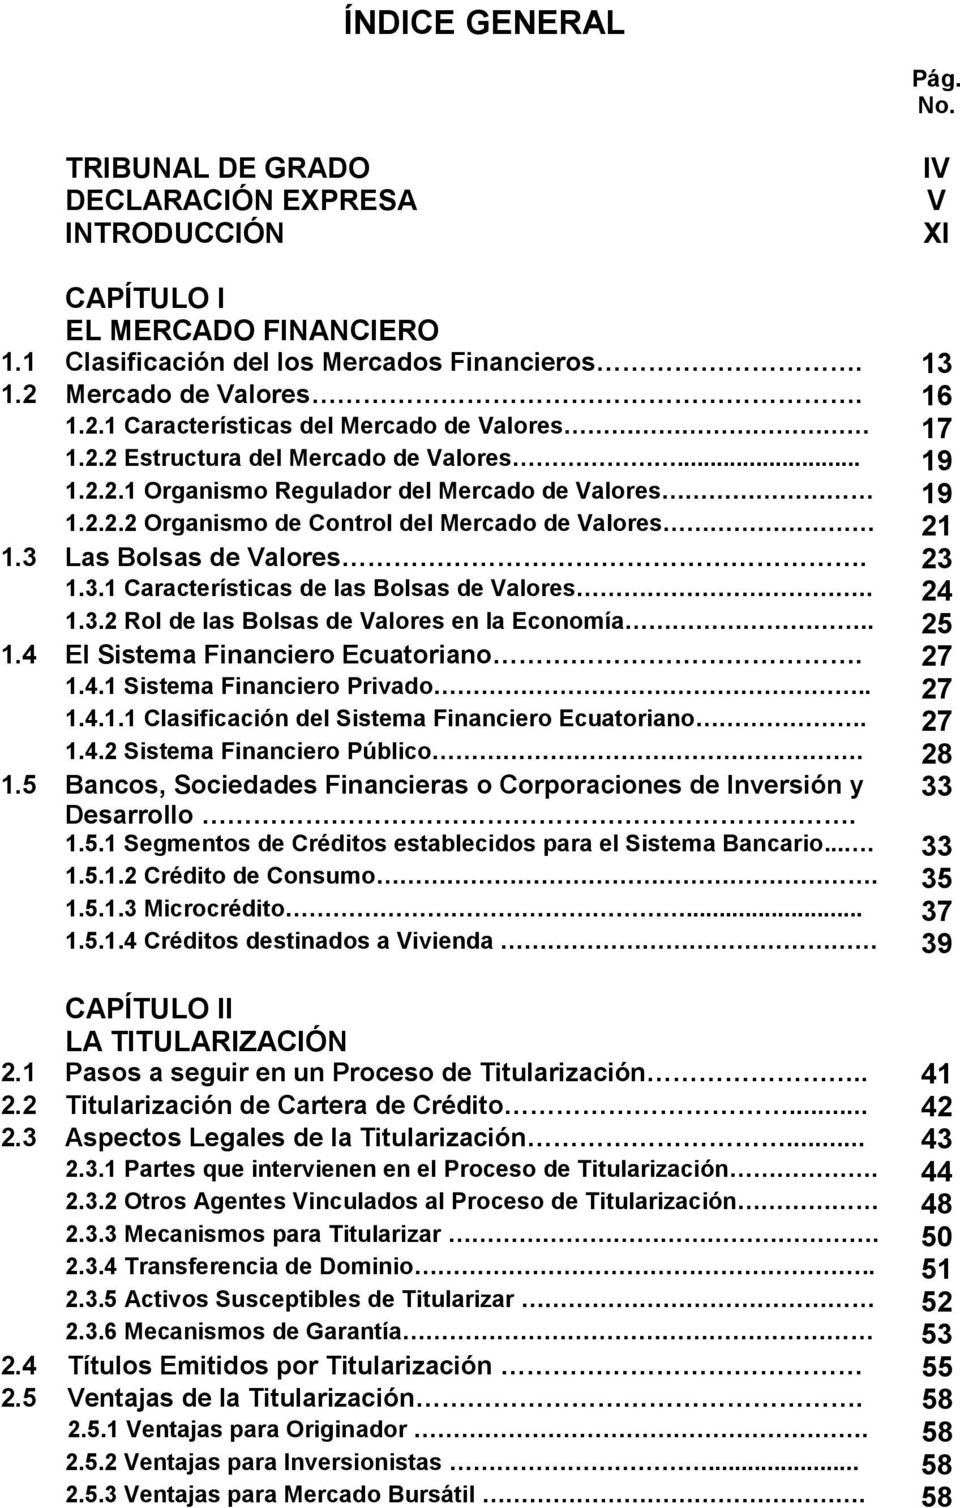 3 Las Bolsas de Valores. 23 1.3.1 Características de las Bolsas de Valores.. 24 1.3.2 Rol de las Bolsas de Valores en la Economía.. 25 1.4 El Sistema Financiero Ecuatoriano. 27 1.4.1 Sistema Financiero Privado.